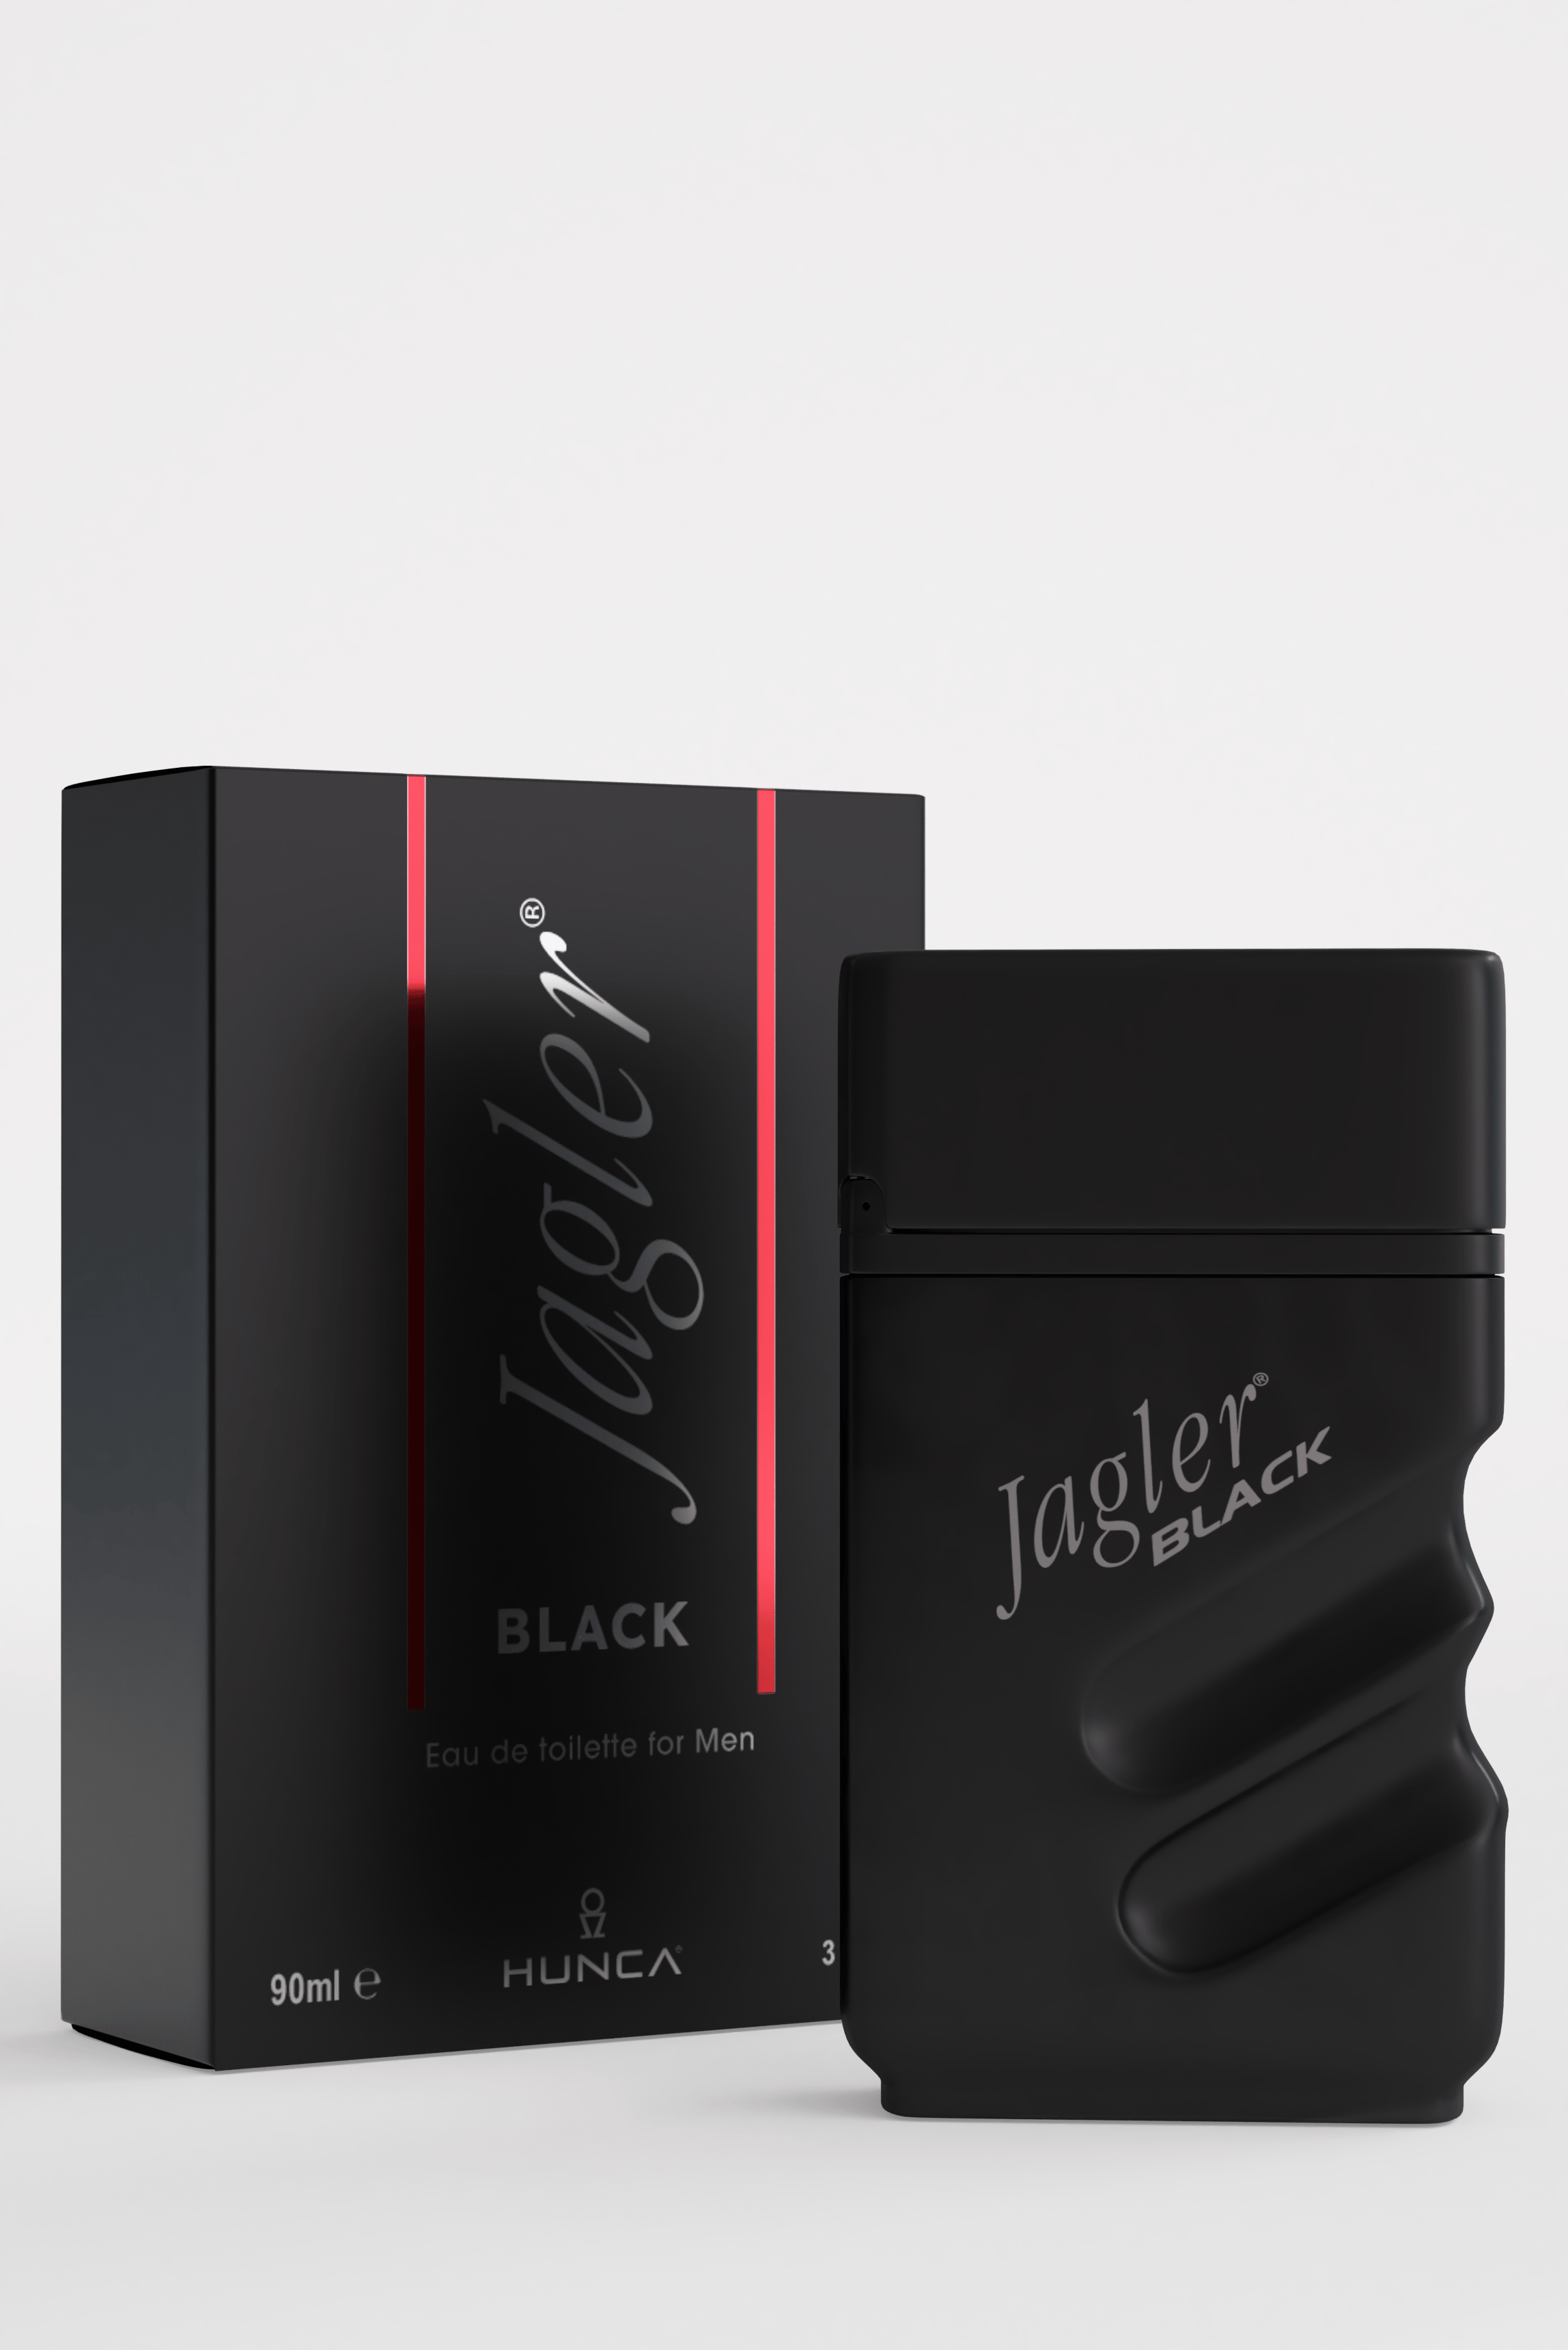 JAGLER BLACK ERKEK EDT 90ML - Hunca Shop